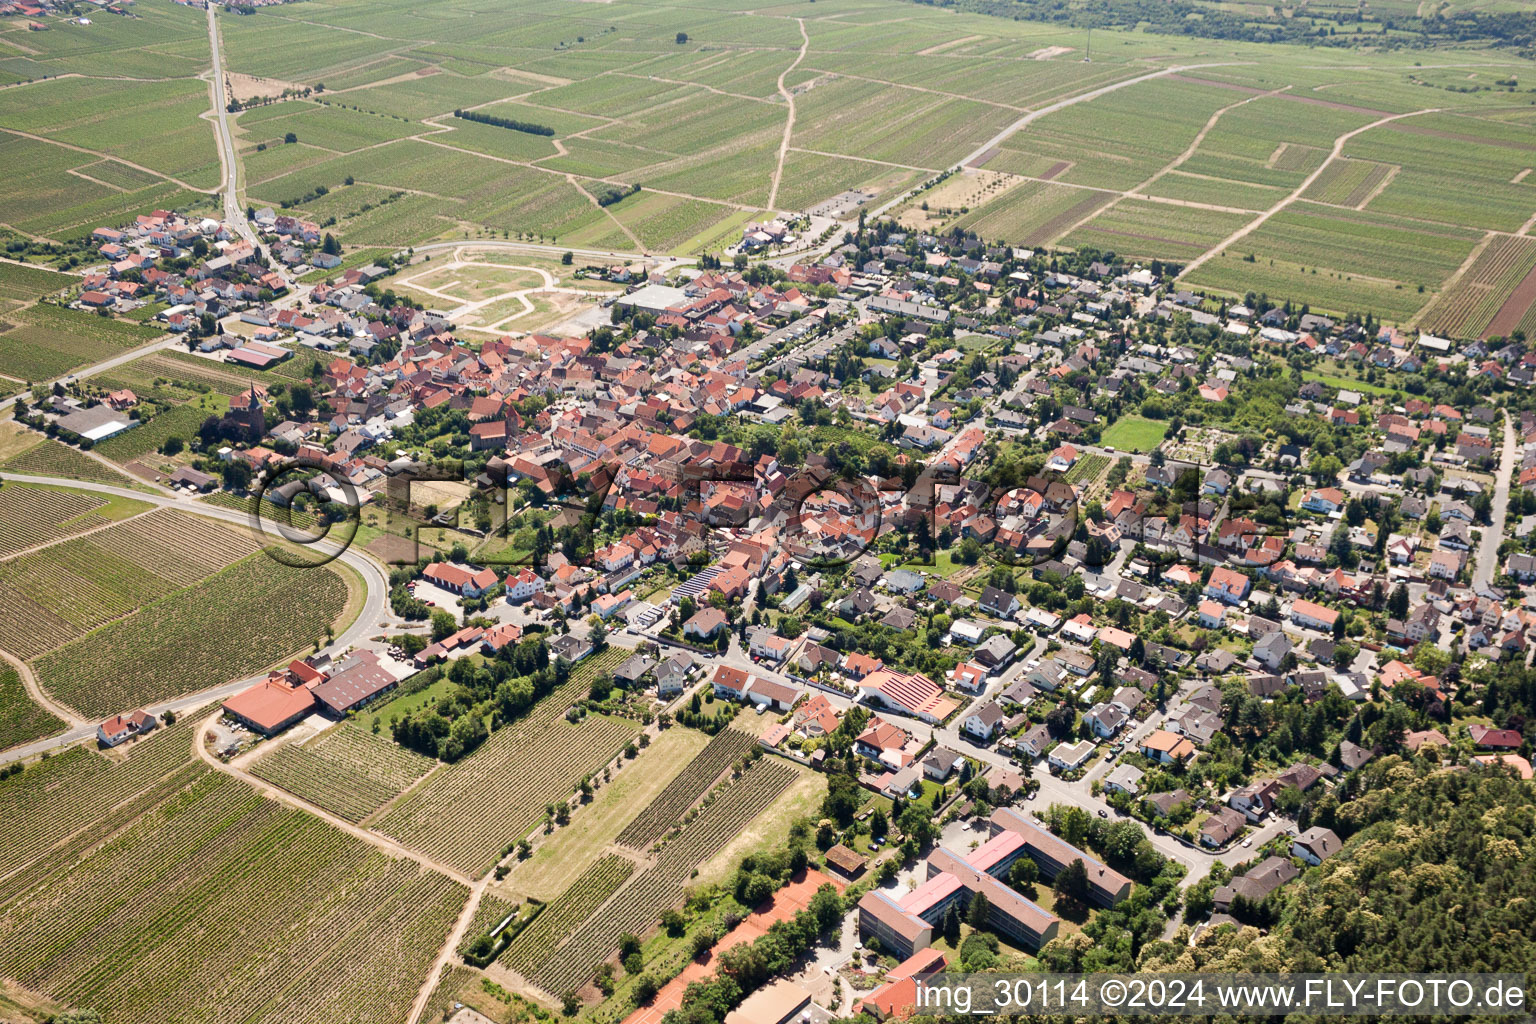 Luftbild von Dorf - Ansicht von Am Münchberg in Bobenheim am Berg im Bundesland Rheinland-Pfalz, Deutschland